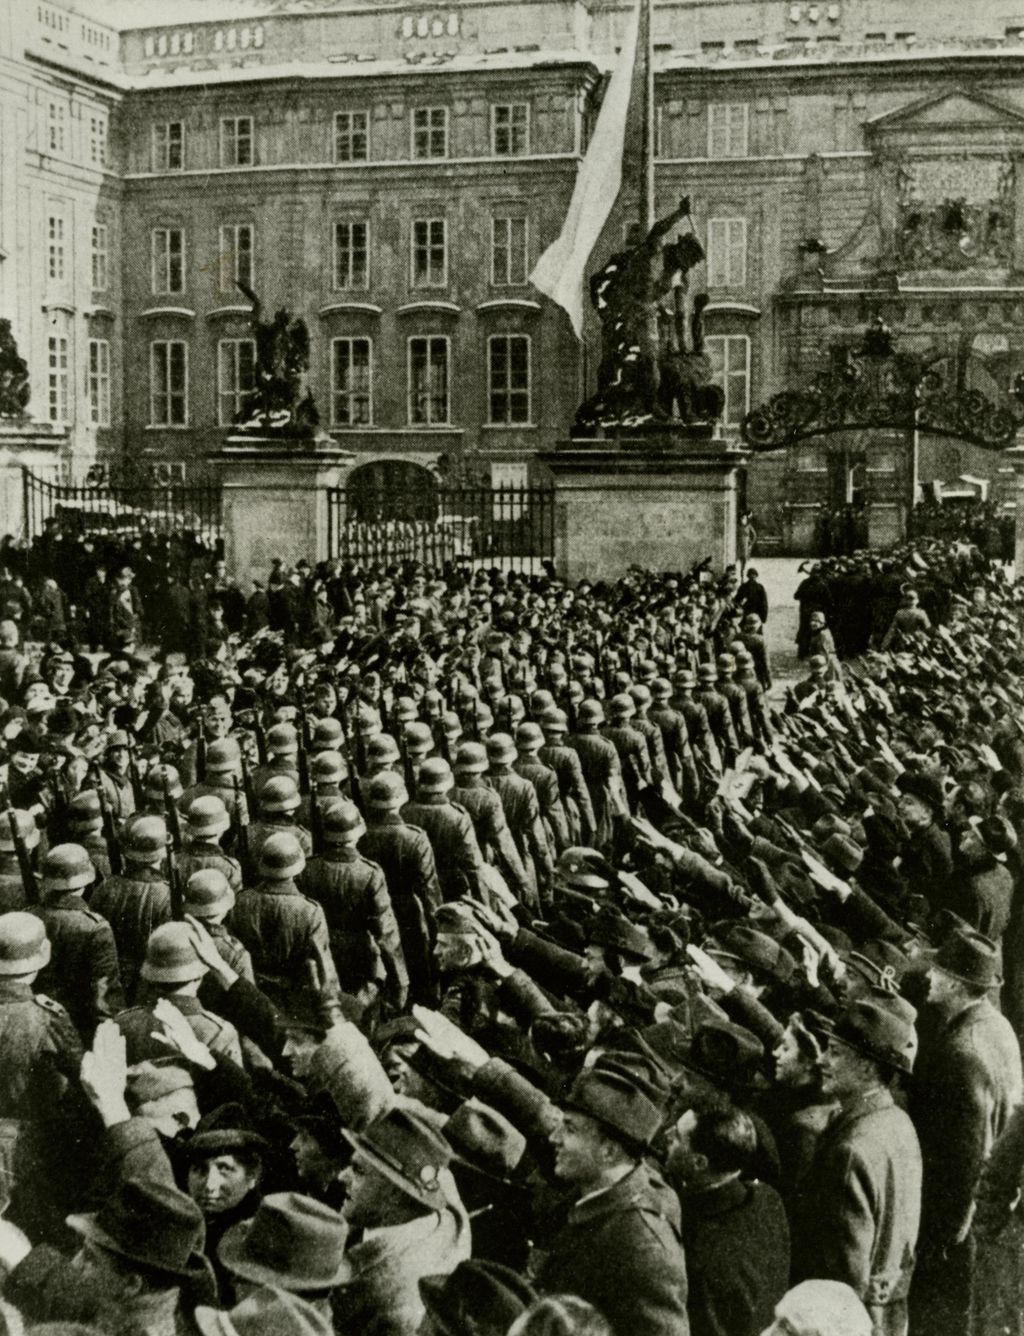 Foto: Besetzung der Prager Burg durch die Wehrmacht, 1939